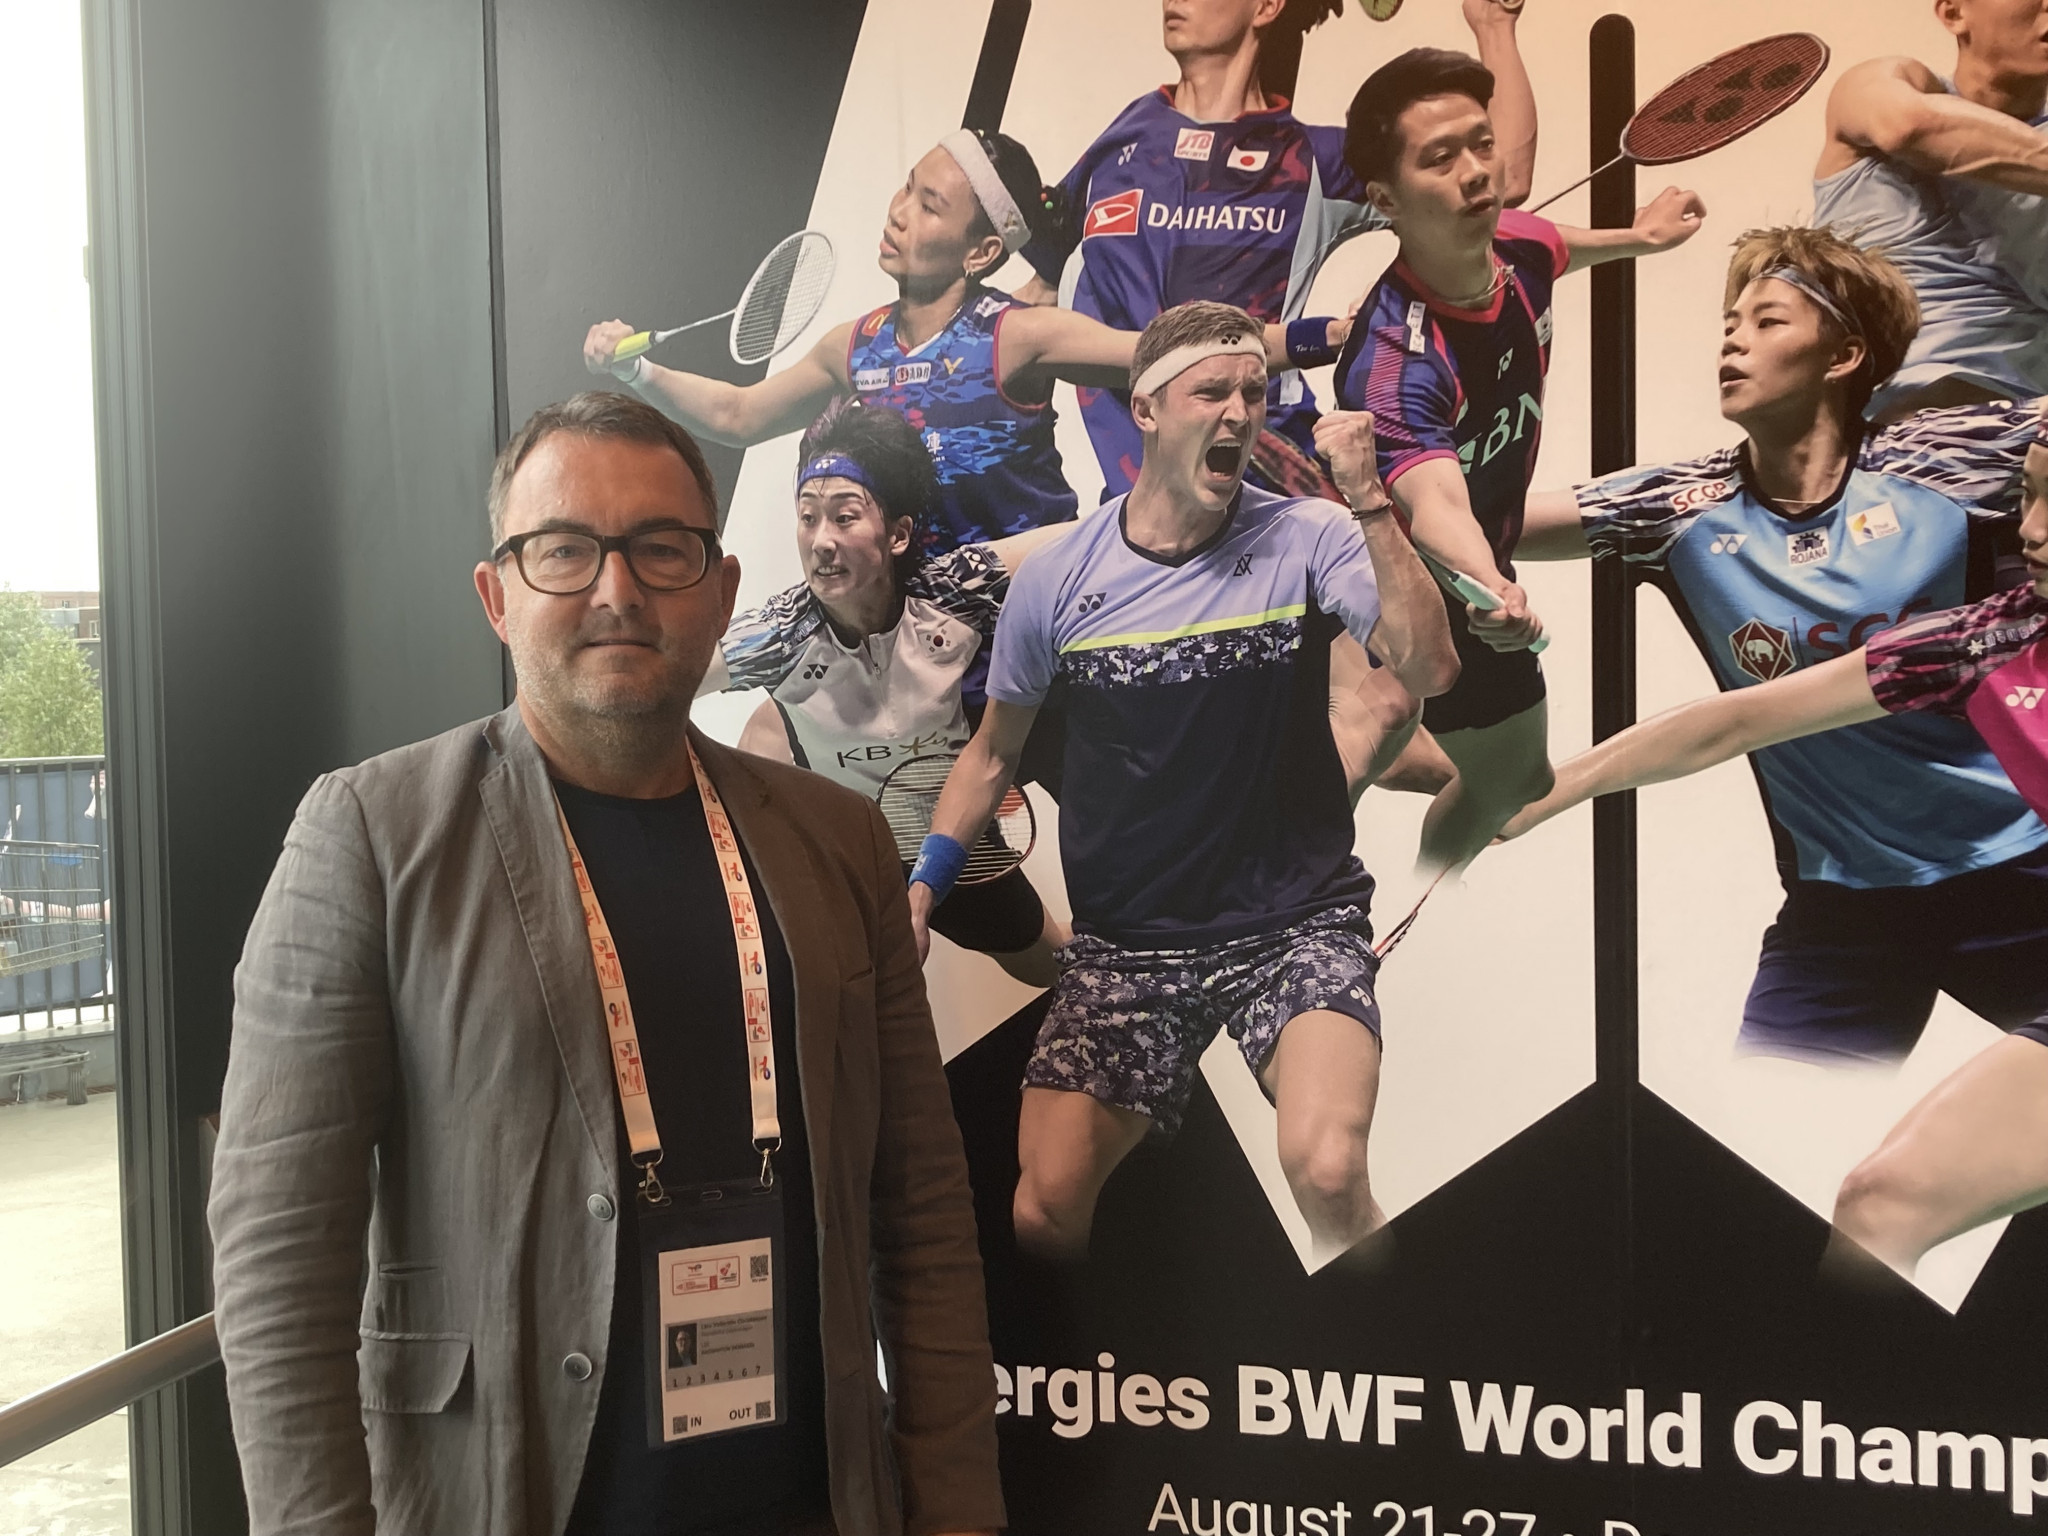 Lars Vallentin Christensen, senior manager for events at Wonderful Copenhagen, praised Badminton Denmark for putting on the BWF World Championships ©ITG